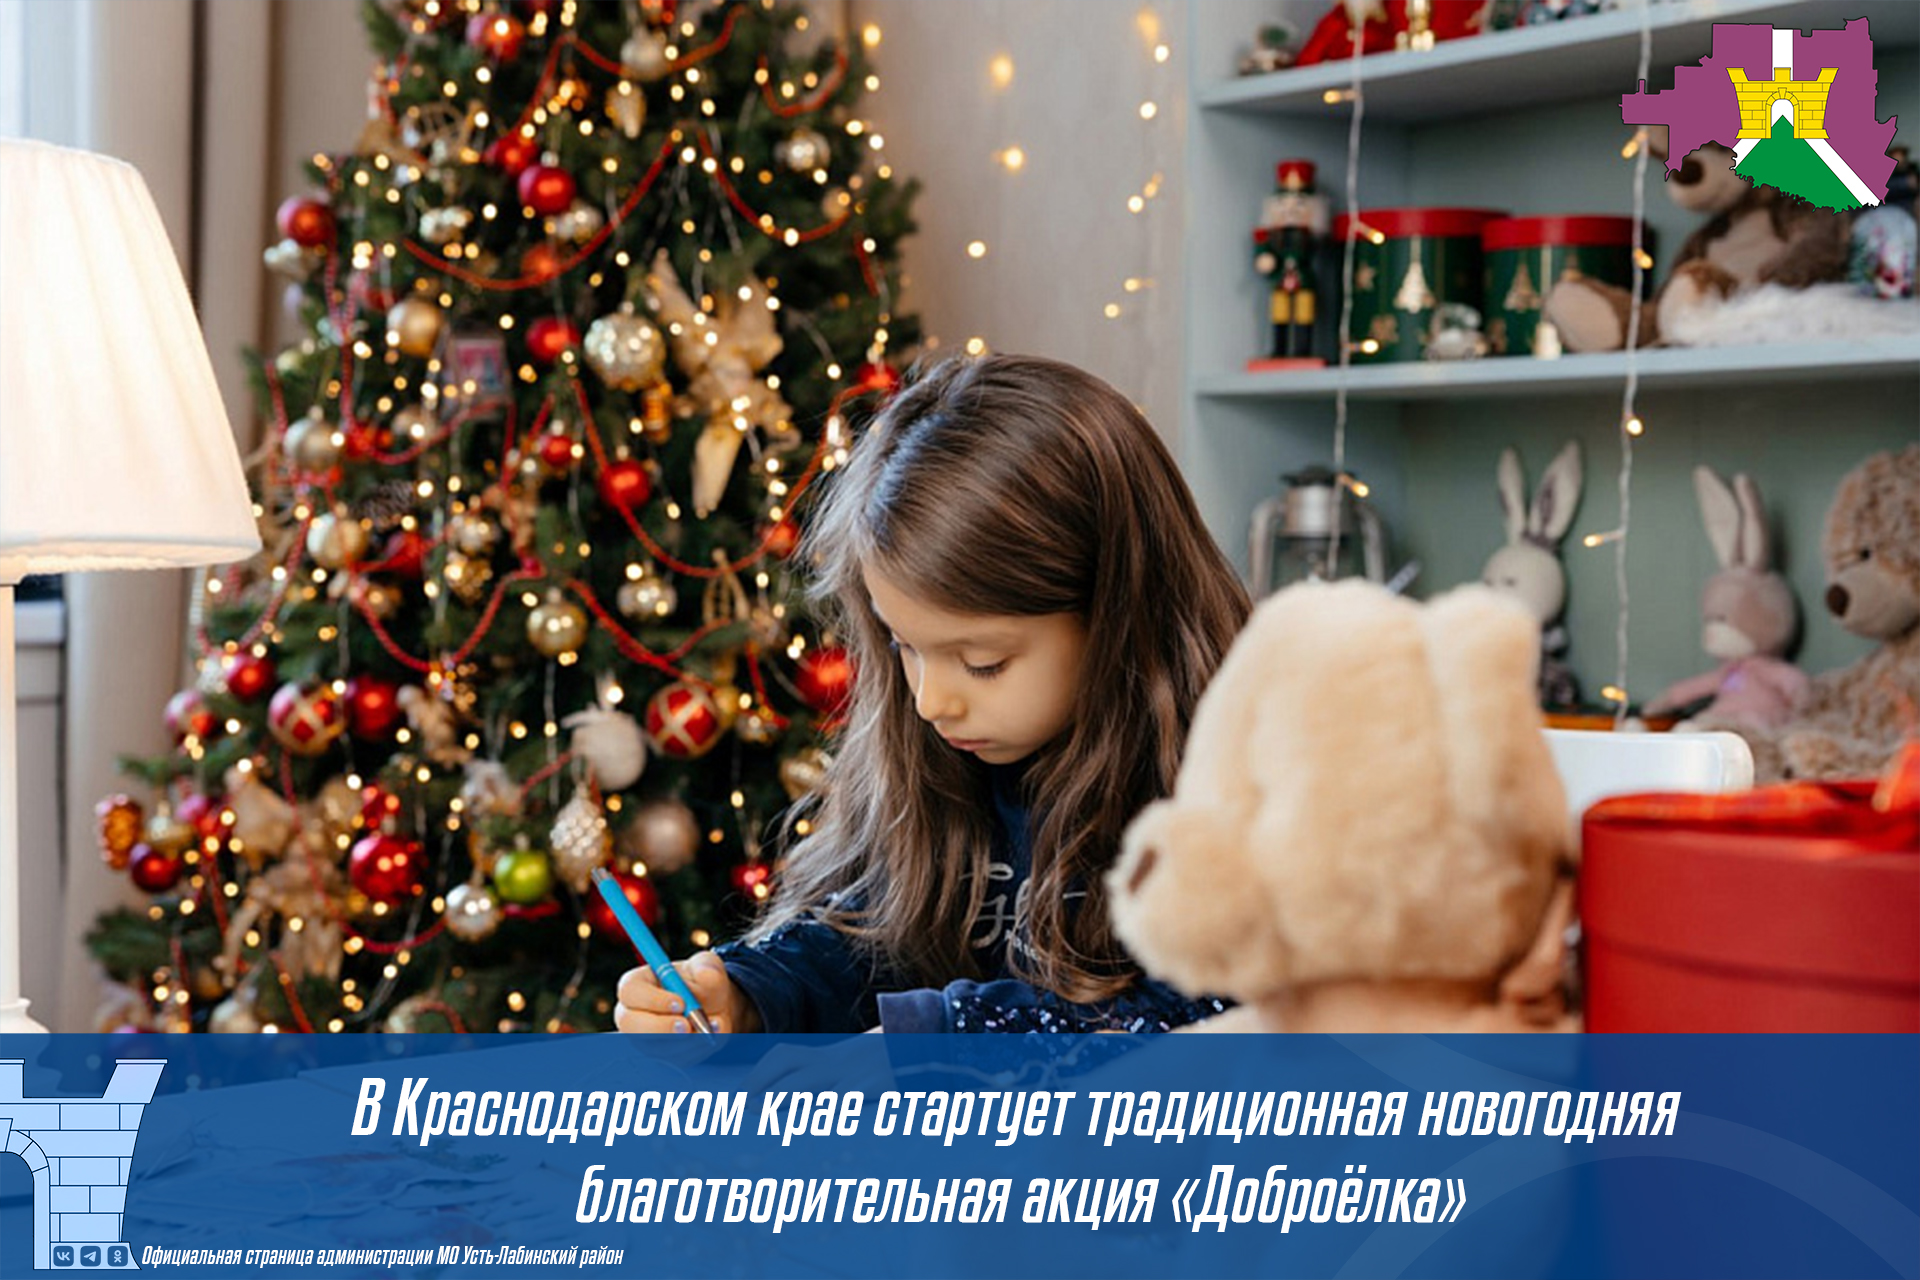 В Краснодарском крае стартует традиционная новогодняя благотворительная акция «Доброёлка»